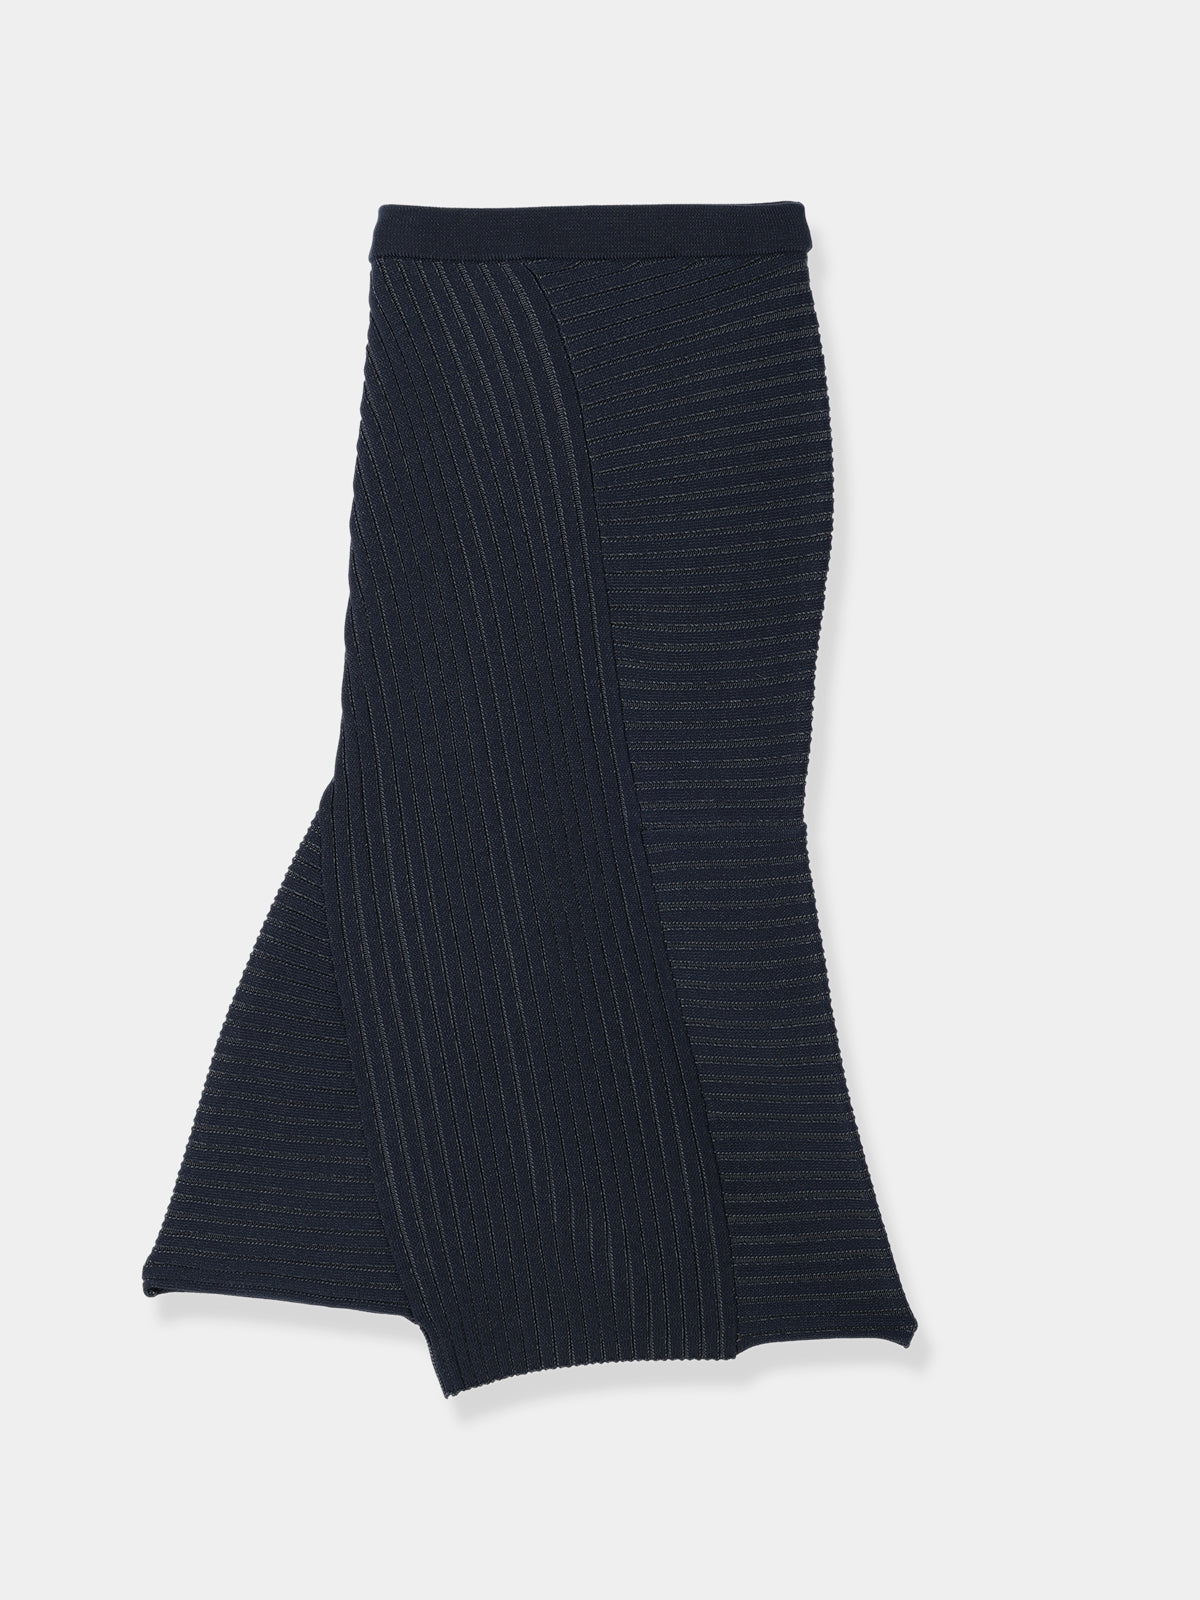 19,000円laubeblanc  Panel ribknit topsとskirtのセット